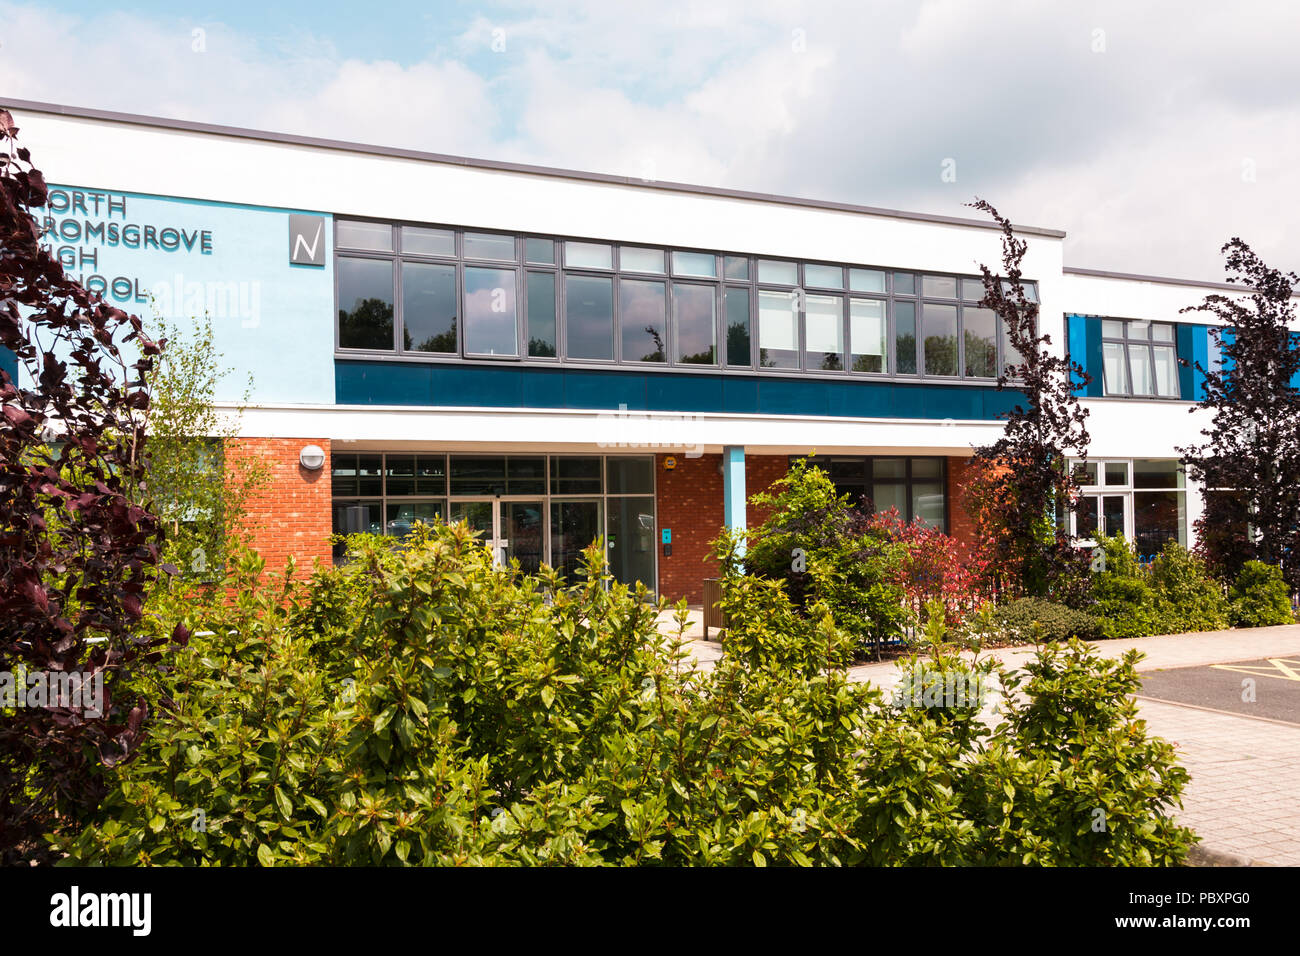 L'école secondaire moderne, North High School, Bromsgrove Bromsgrove, Worcestershire UK construit par BAM 2017 Banque D'Images